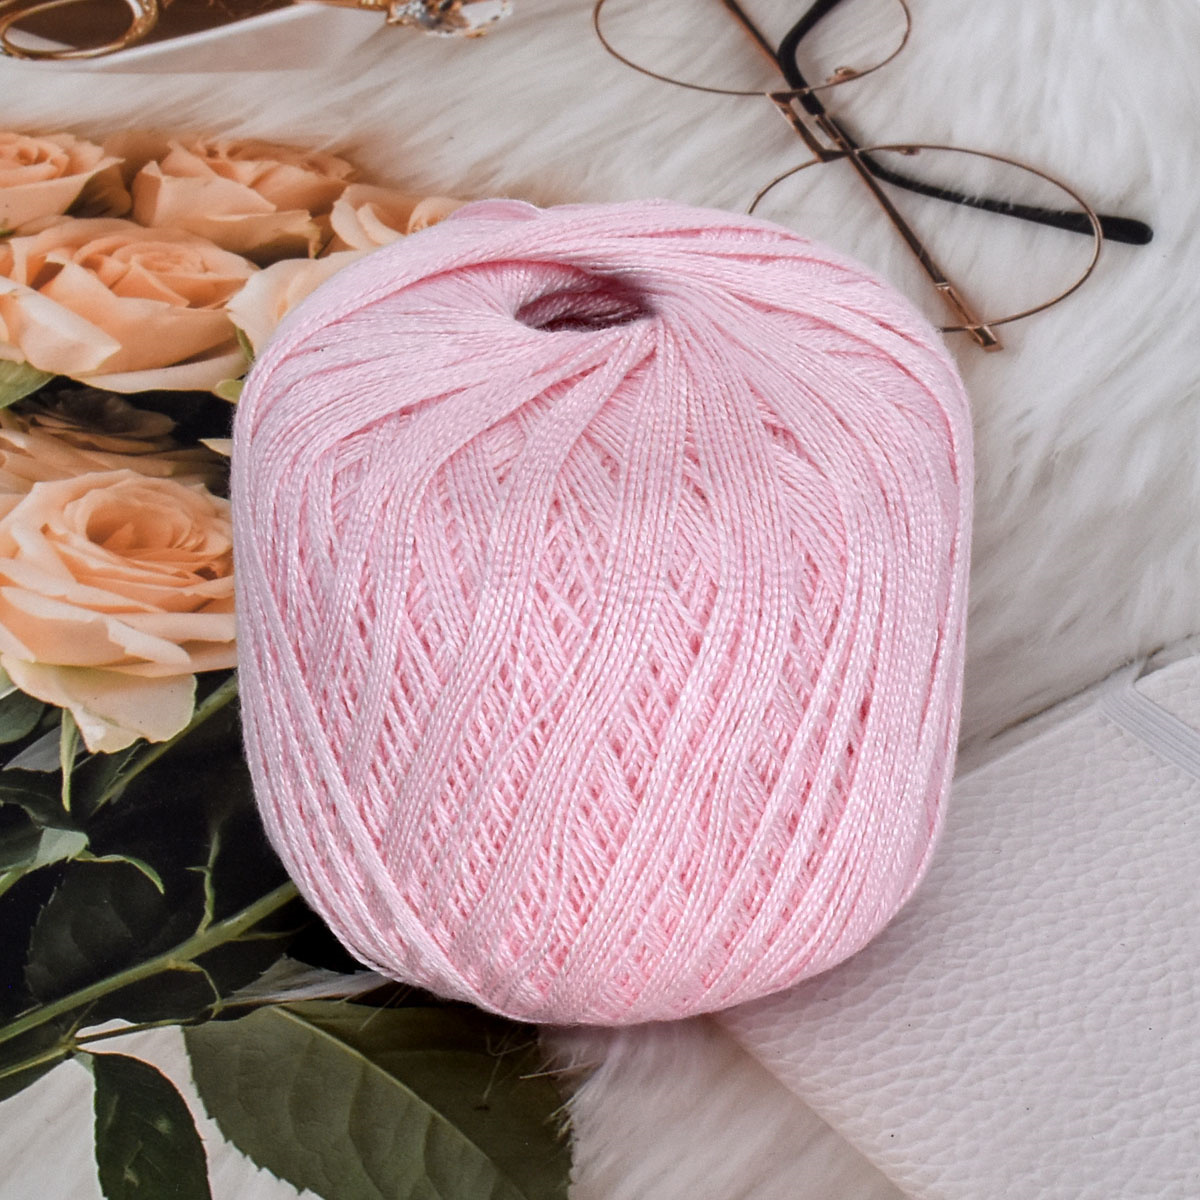 crochet cotton yarn thin yarn lace